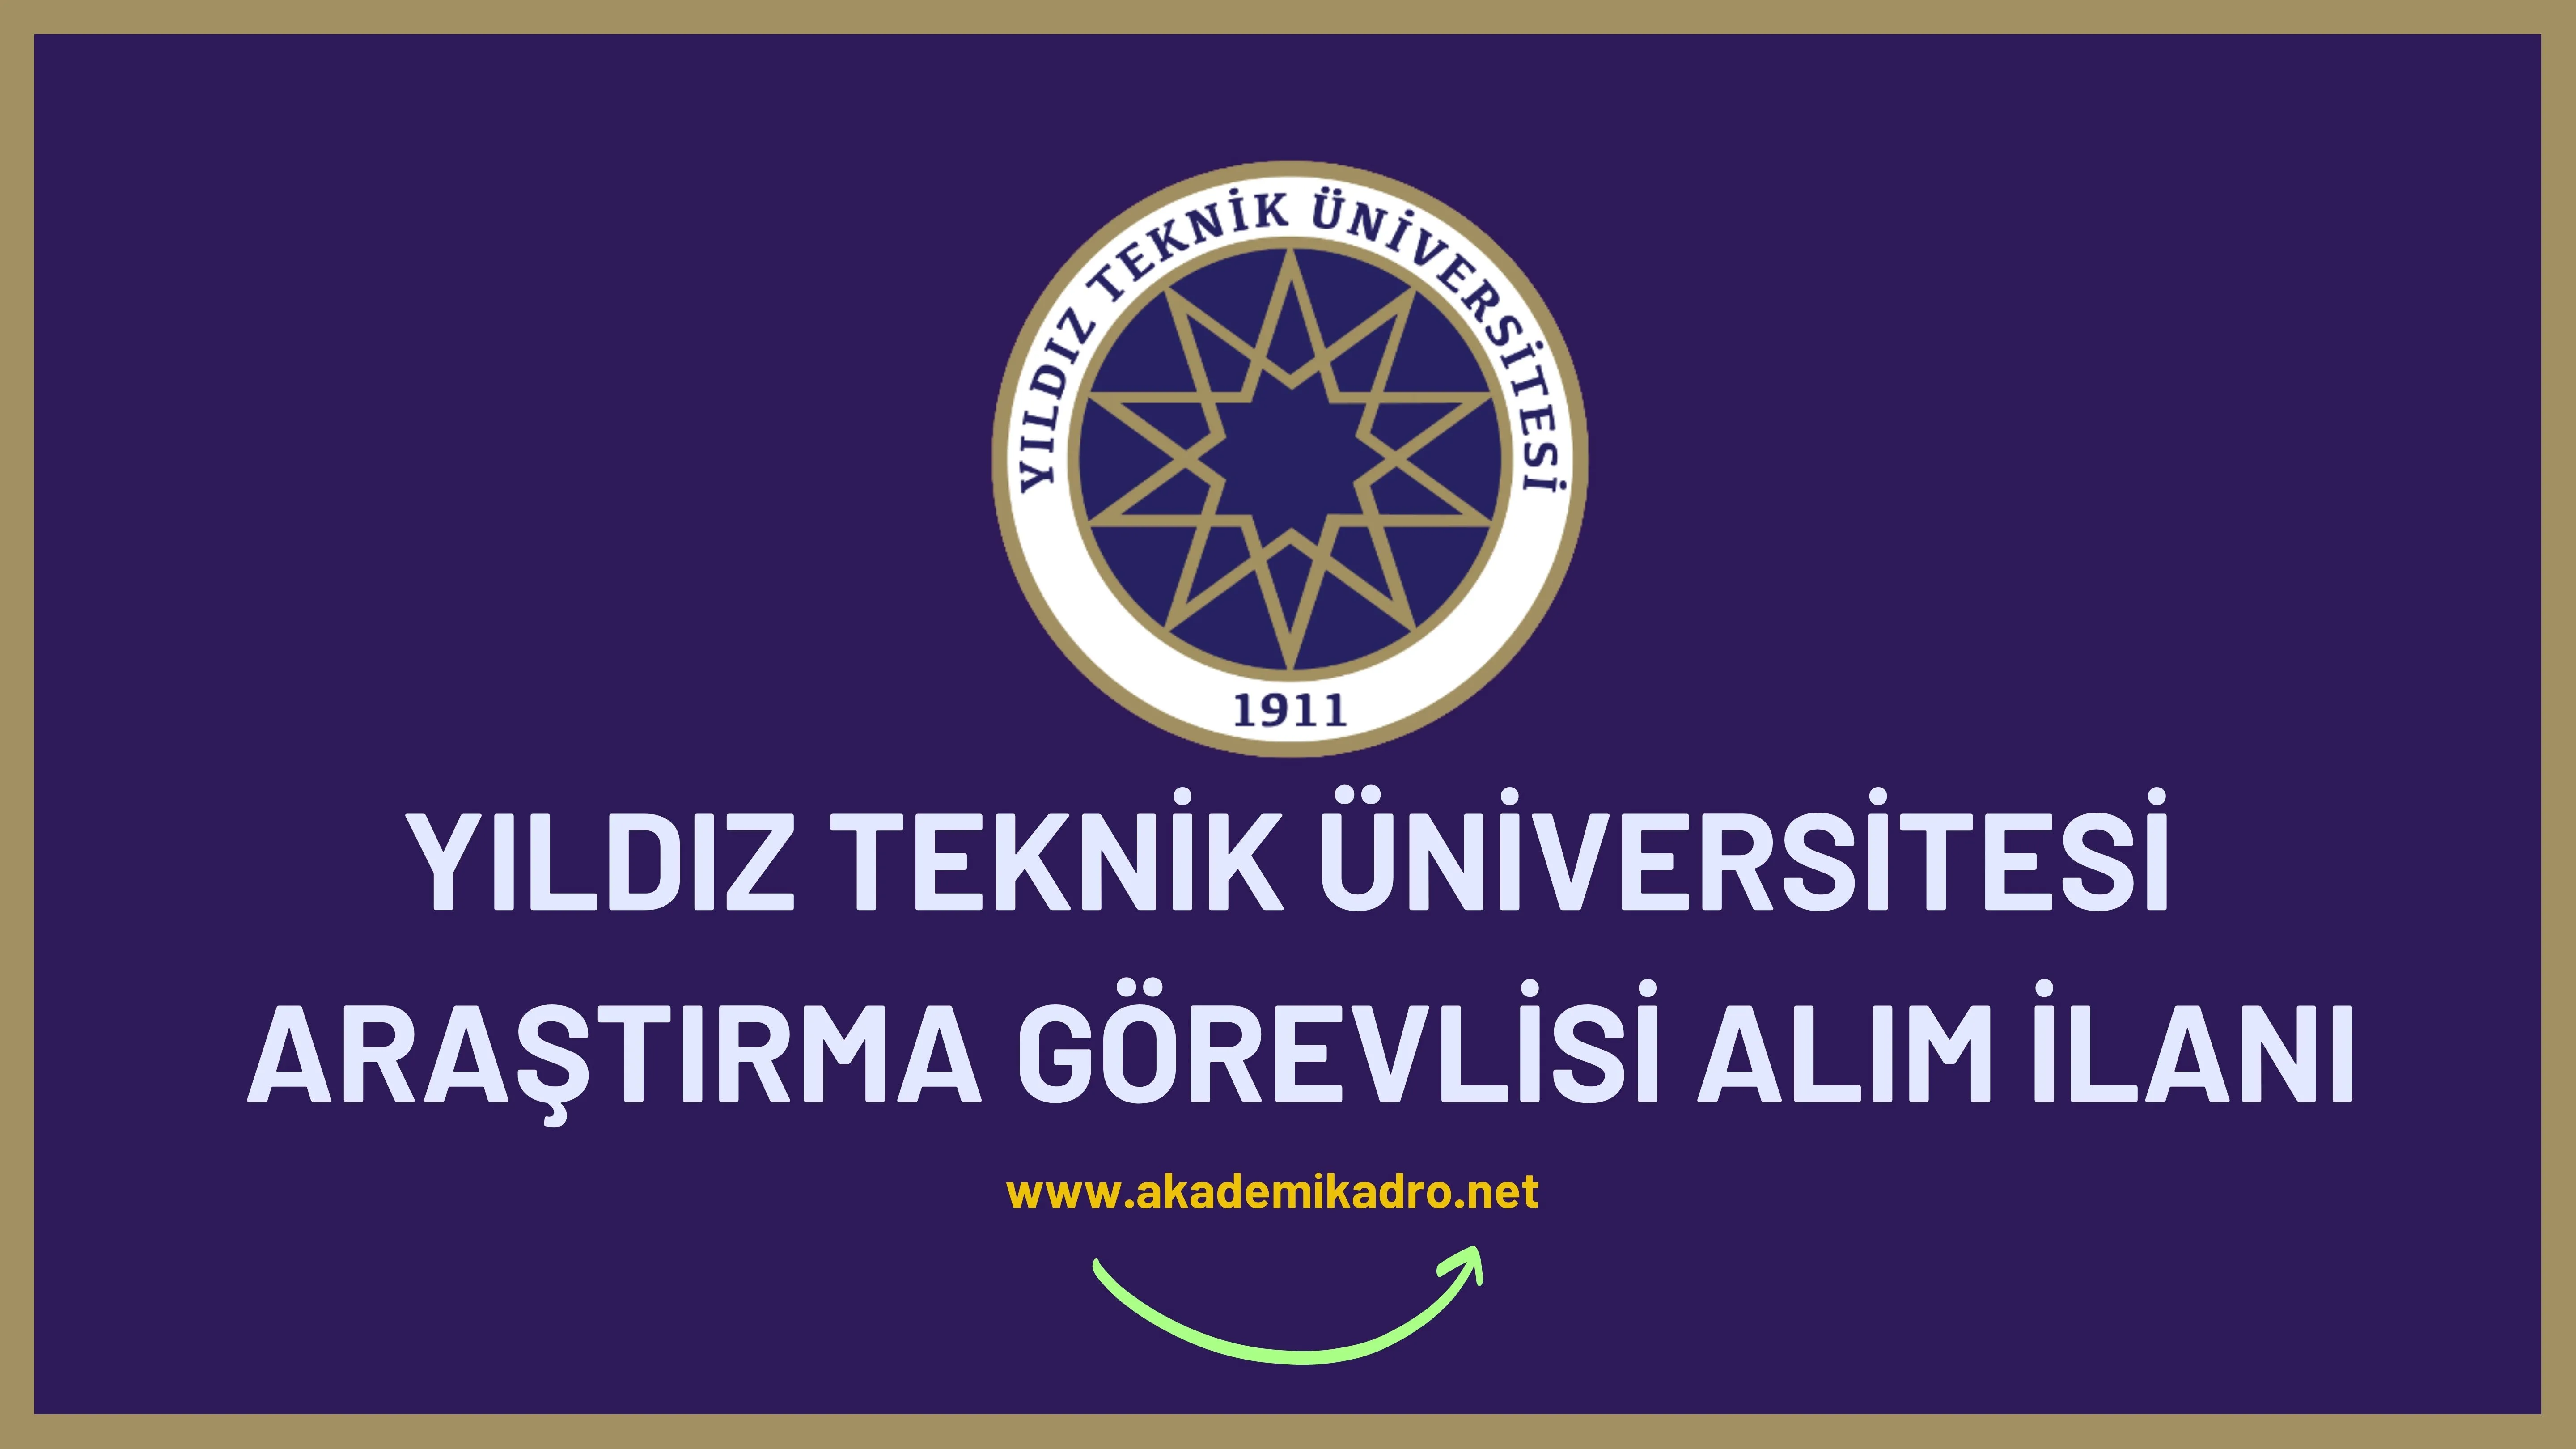 Yıldız Üniversitesi 29 Araştırma görevlisi alacaktır. Son başvuru tarihi 16 Ocak 2023